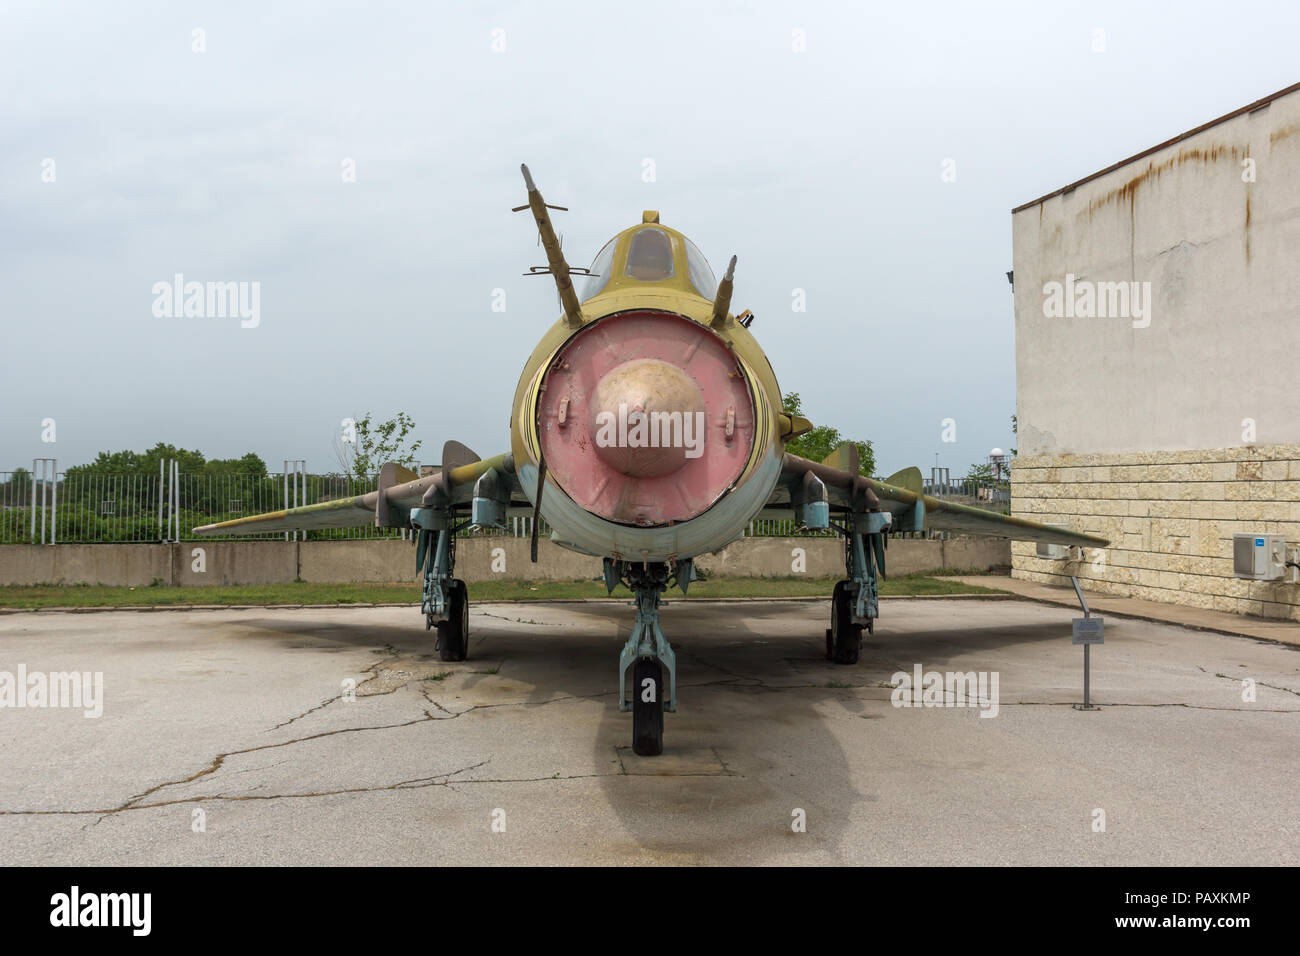 KRUMOVO, Plovdiv, Bulgarien - 29 April 2017: fighter-bomber Suchoi Su-22 im Luftfahrtmuseum in der Nähe von Flughafen Plowdiw, Bulgarien Stockfoto